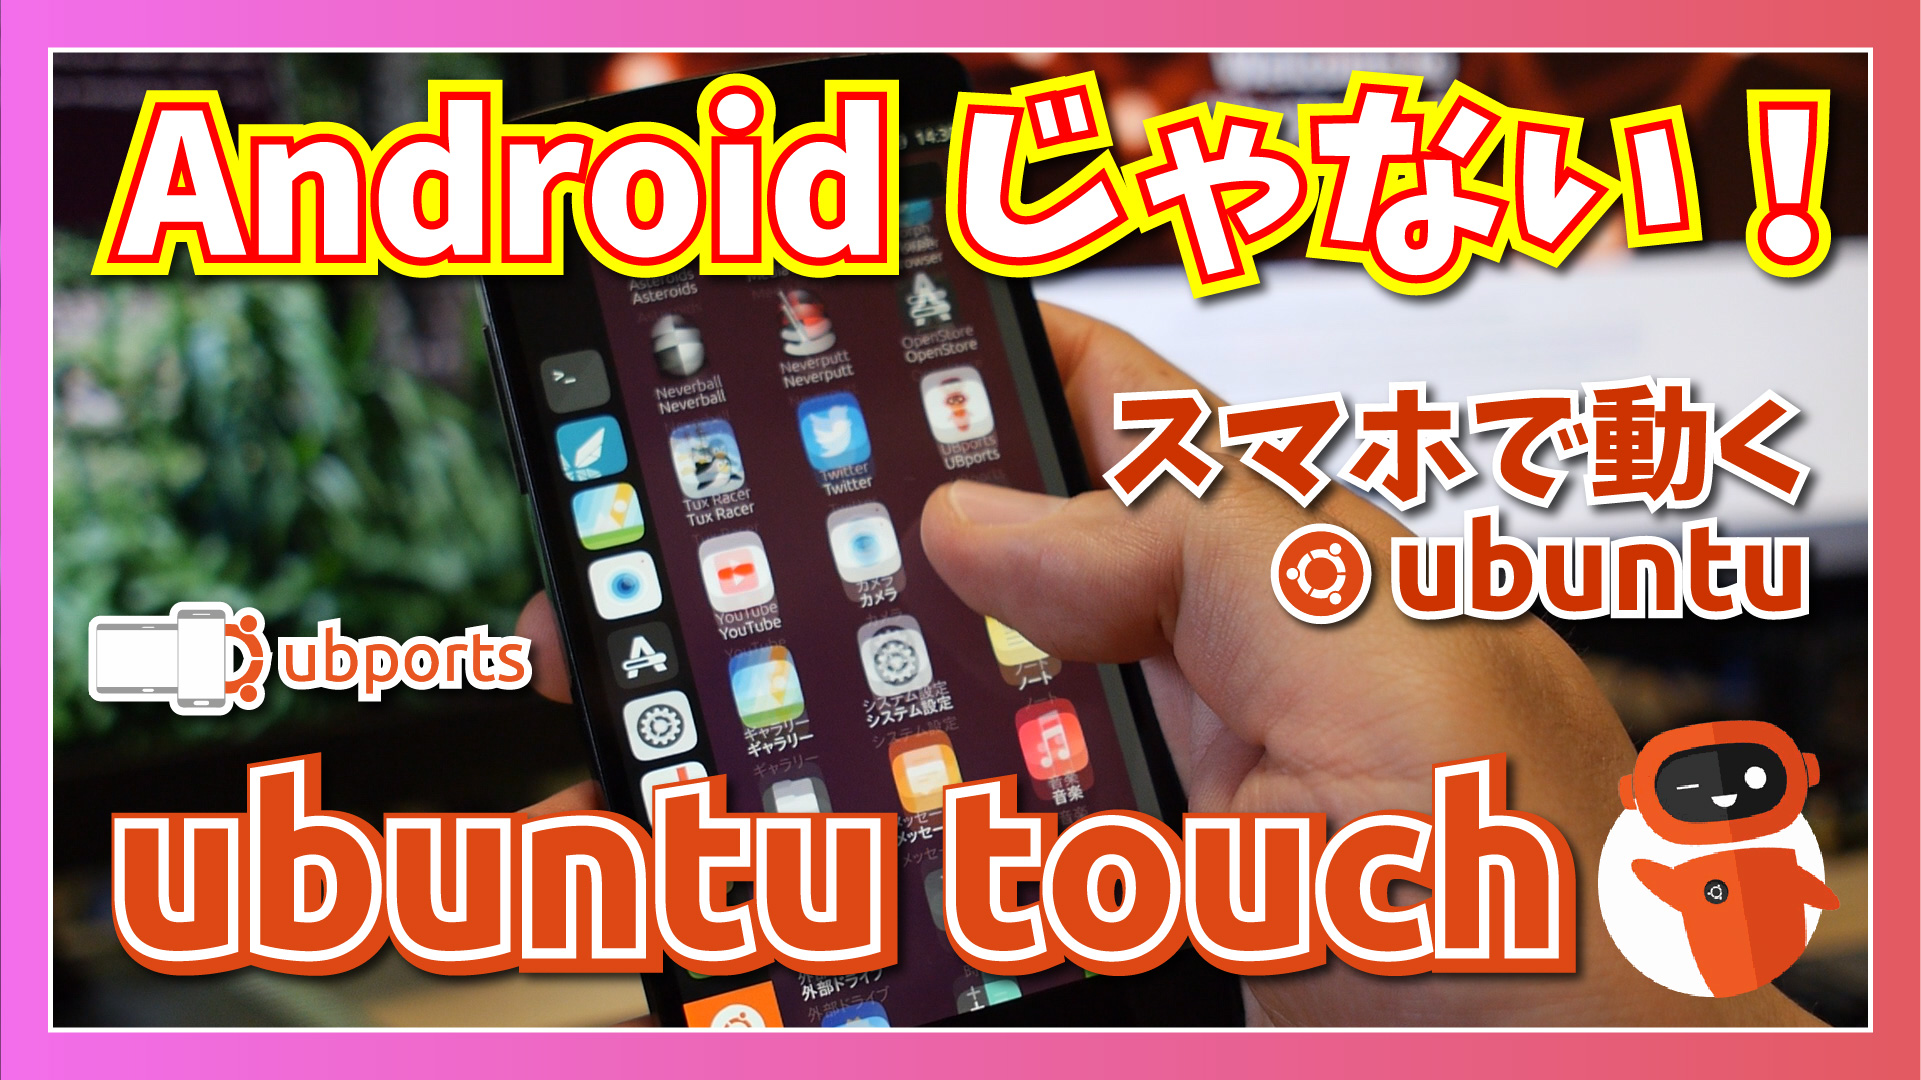 【Ubuntu Touch OTA-17】Android でも iOS でもない Linux ベースのモバイル OS の最新版をいじってみた。